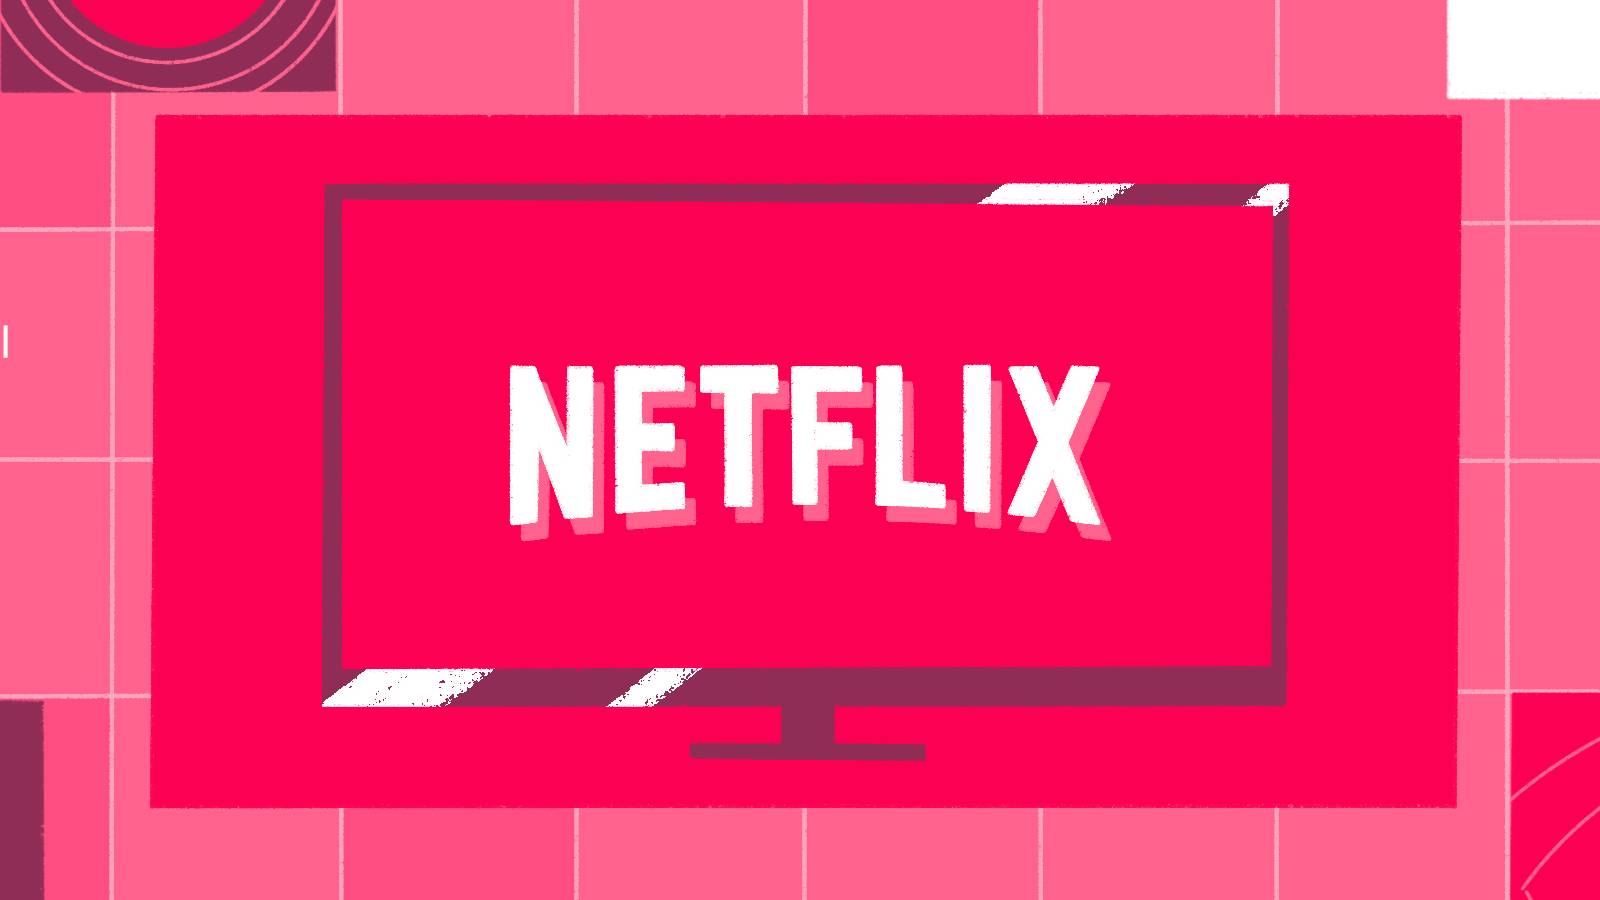 Odzyskiwanie Netflixa